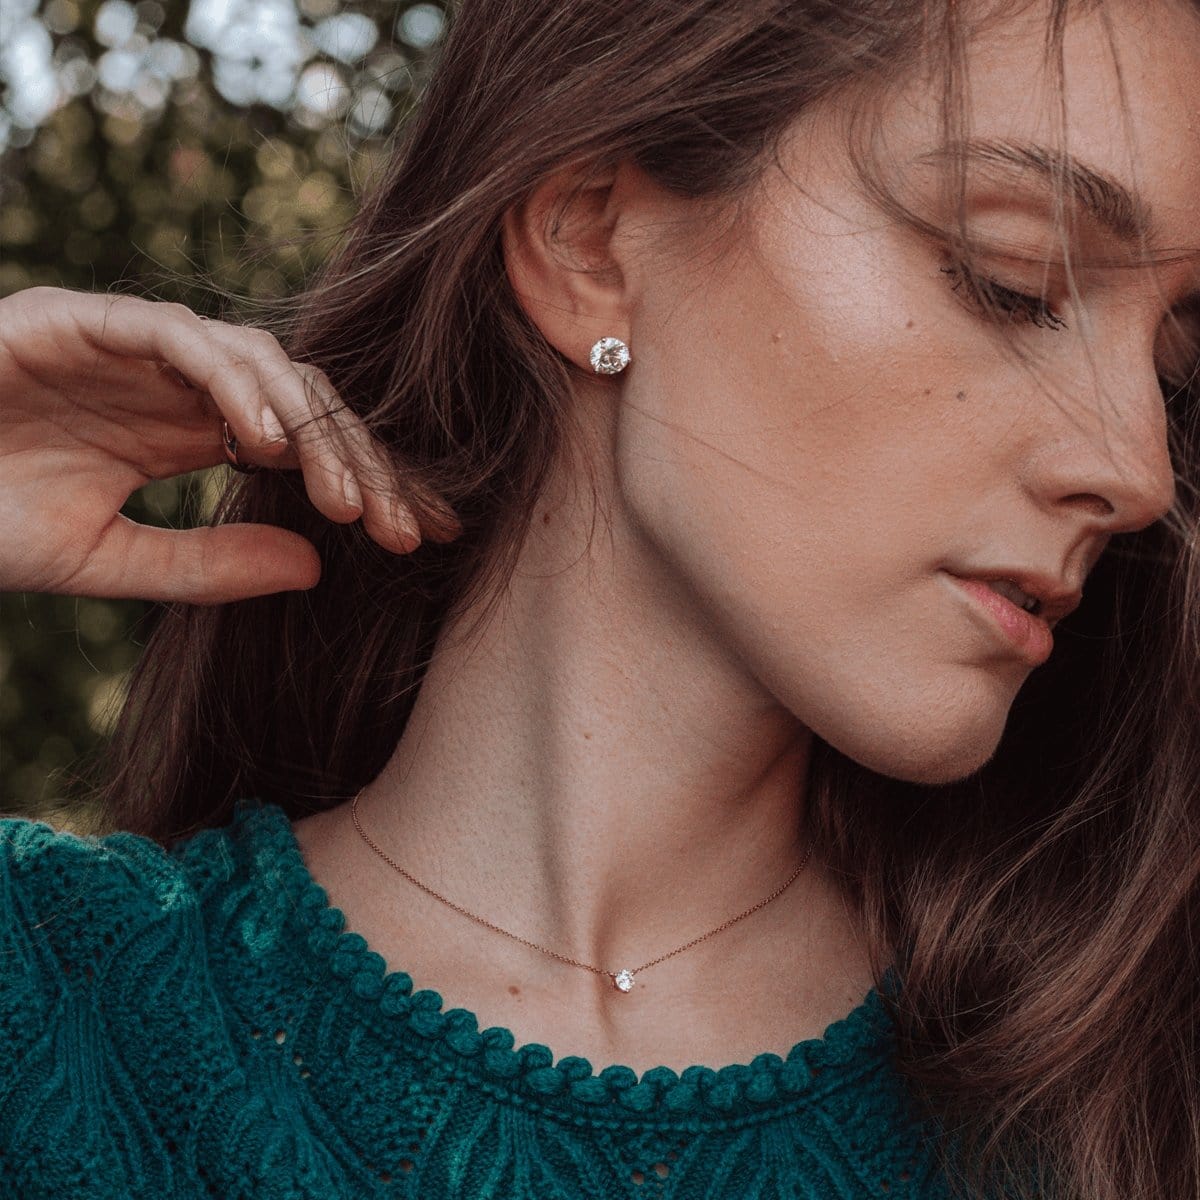 Women's Gold Diamond Stud Earrings